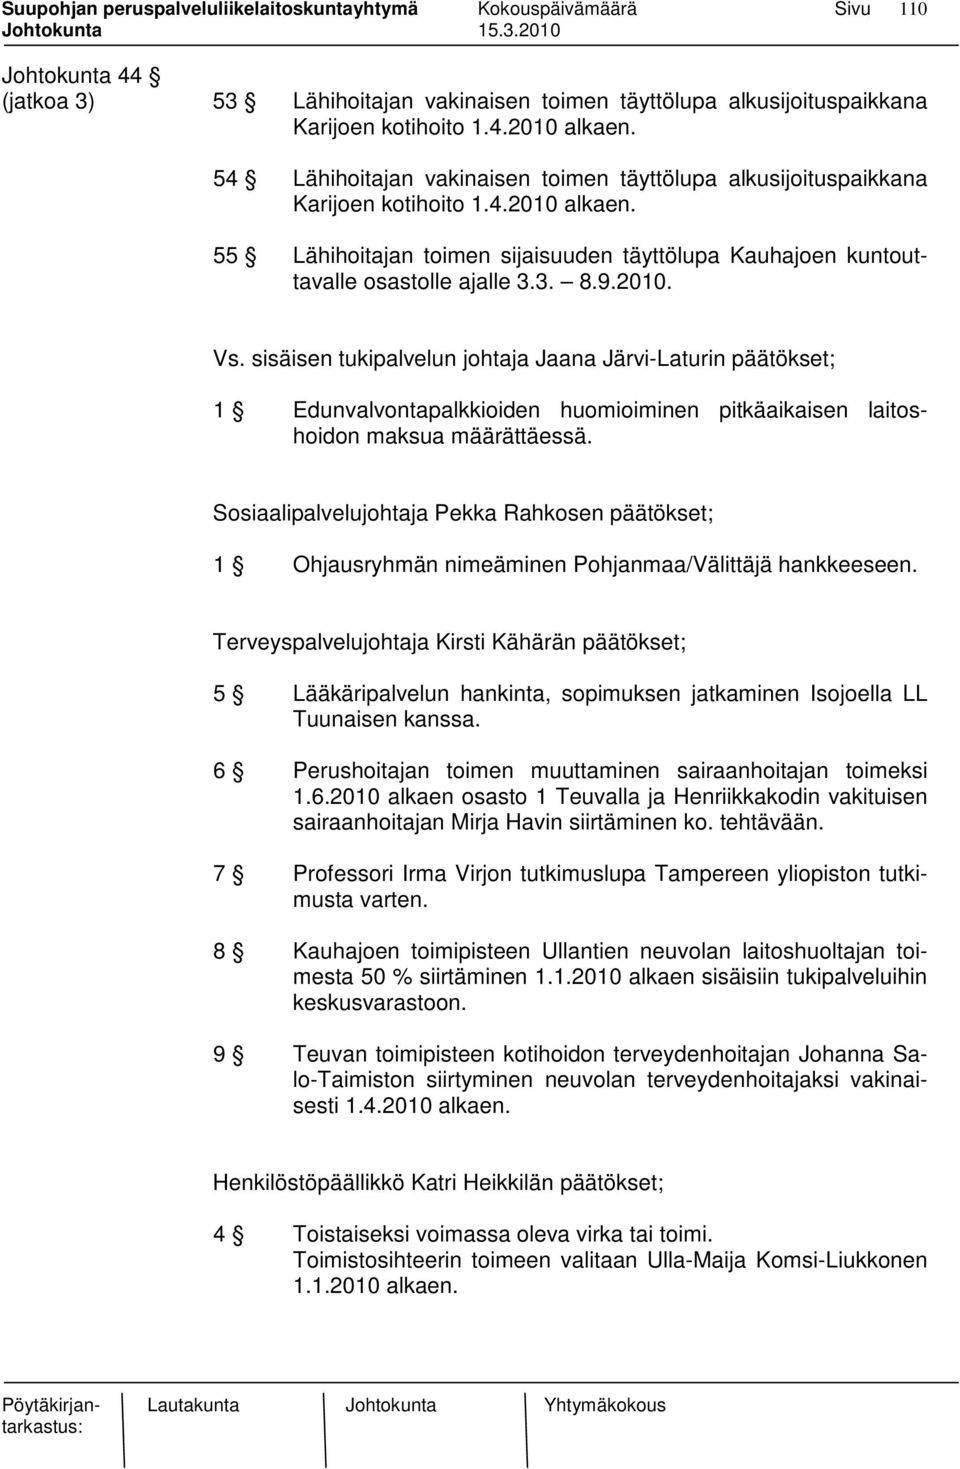 2010. Vs. sisäisen tukipalvelun johtaja Jaana Järvi-Laturin päätökset; 1 Edunvalvontapalkkioiden huomioiminen pitkäaikaisen laitoshoidon maksua määrättäessä.